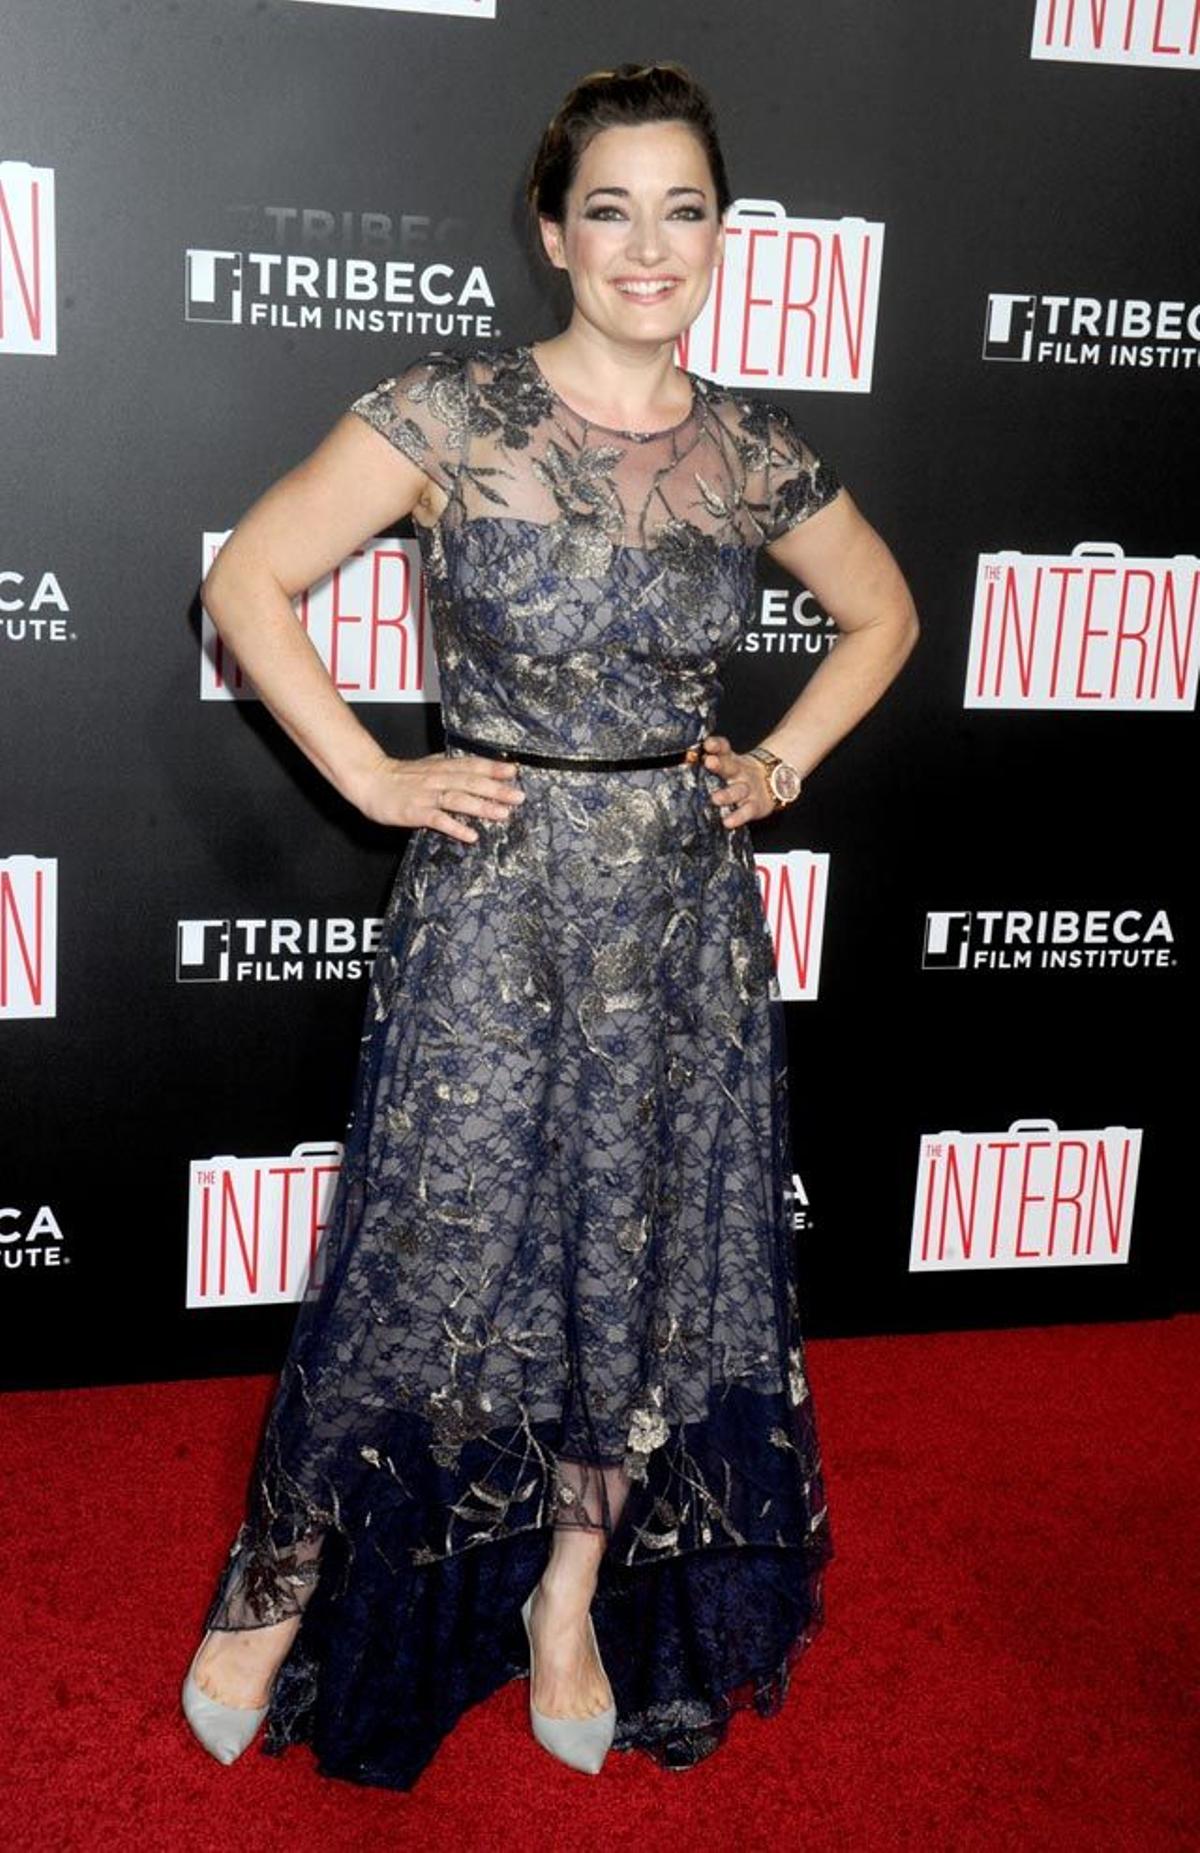 Laura Michelle Kelly, en el estreno de 'The Intern' en Nueva York